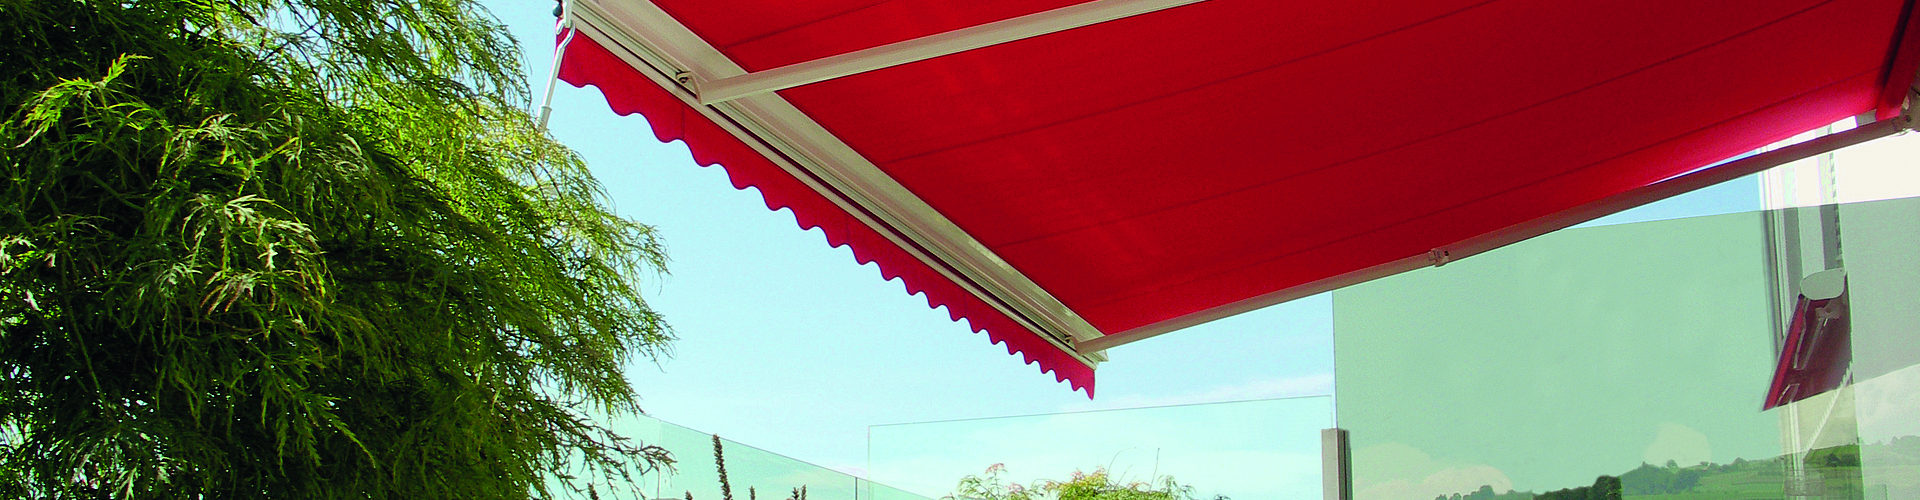 rote, ausgefahrene Gelenkarm-Markise an weißer Hauswand, mit Terrasse, Liegestühlen, Glas-Geländer und Pflanzen.